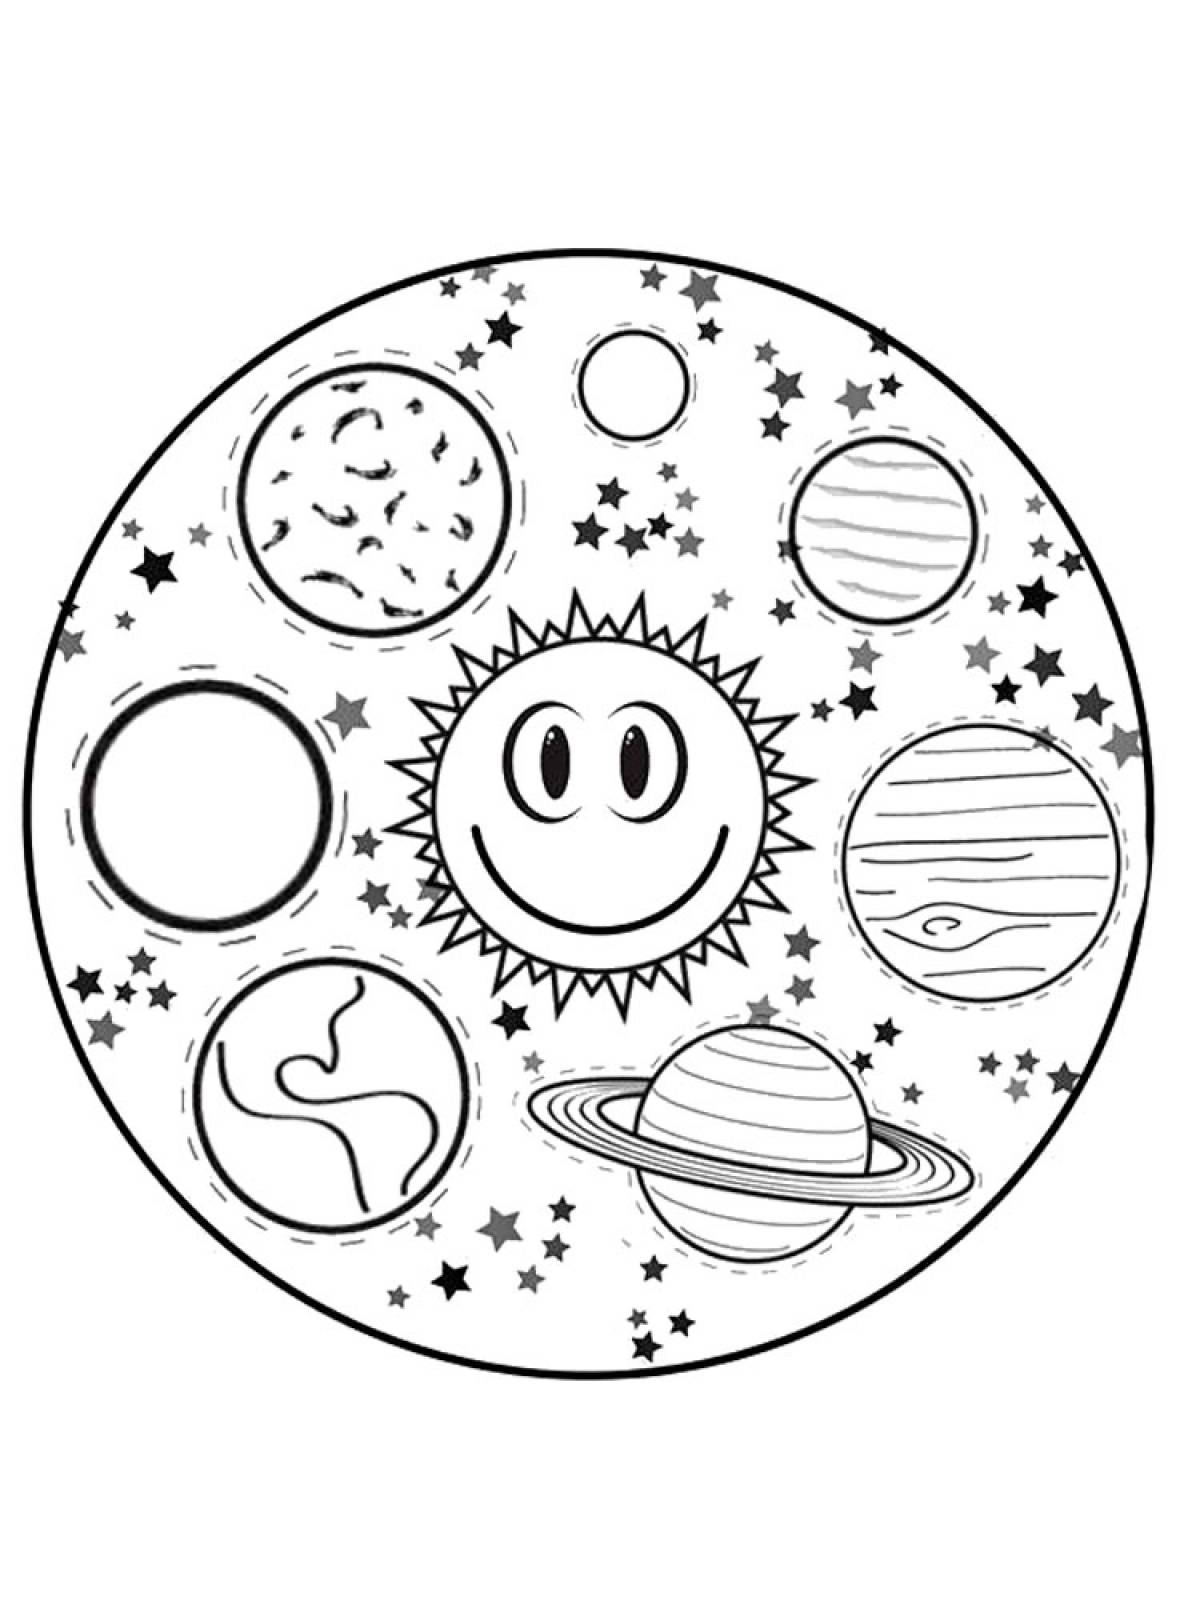 Раскраска солнечная система для детей распечатать. Раскраска планеты солнечной системы для детей. Солнечная система раскраска для детей. Космос раскраска для детей. Планеты солнечной системы раскраска.